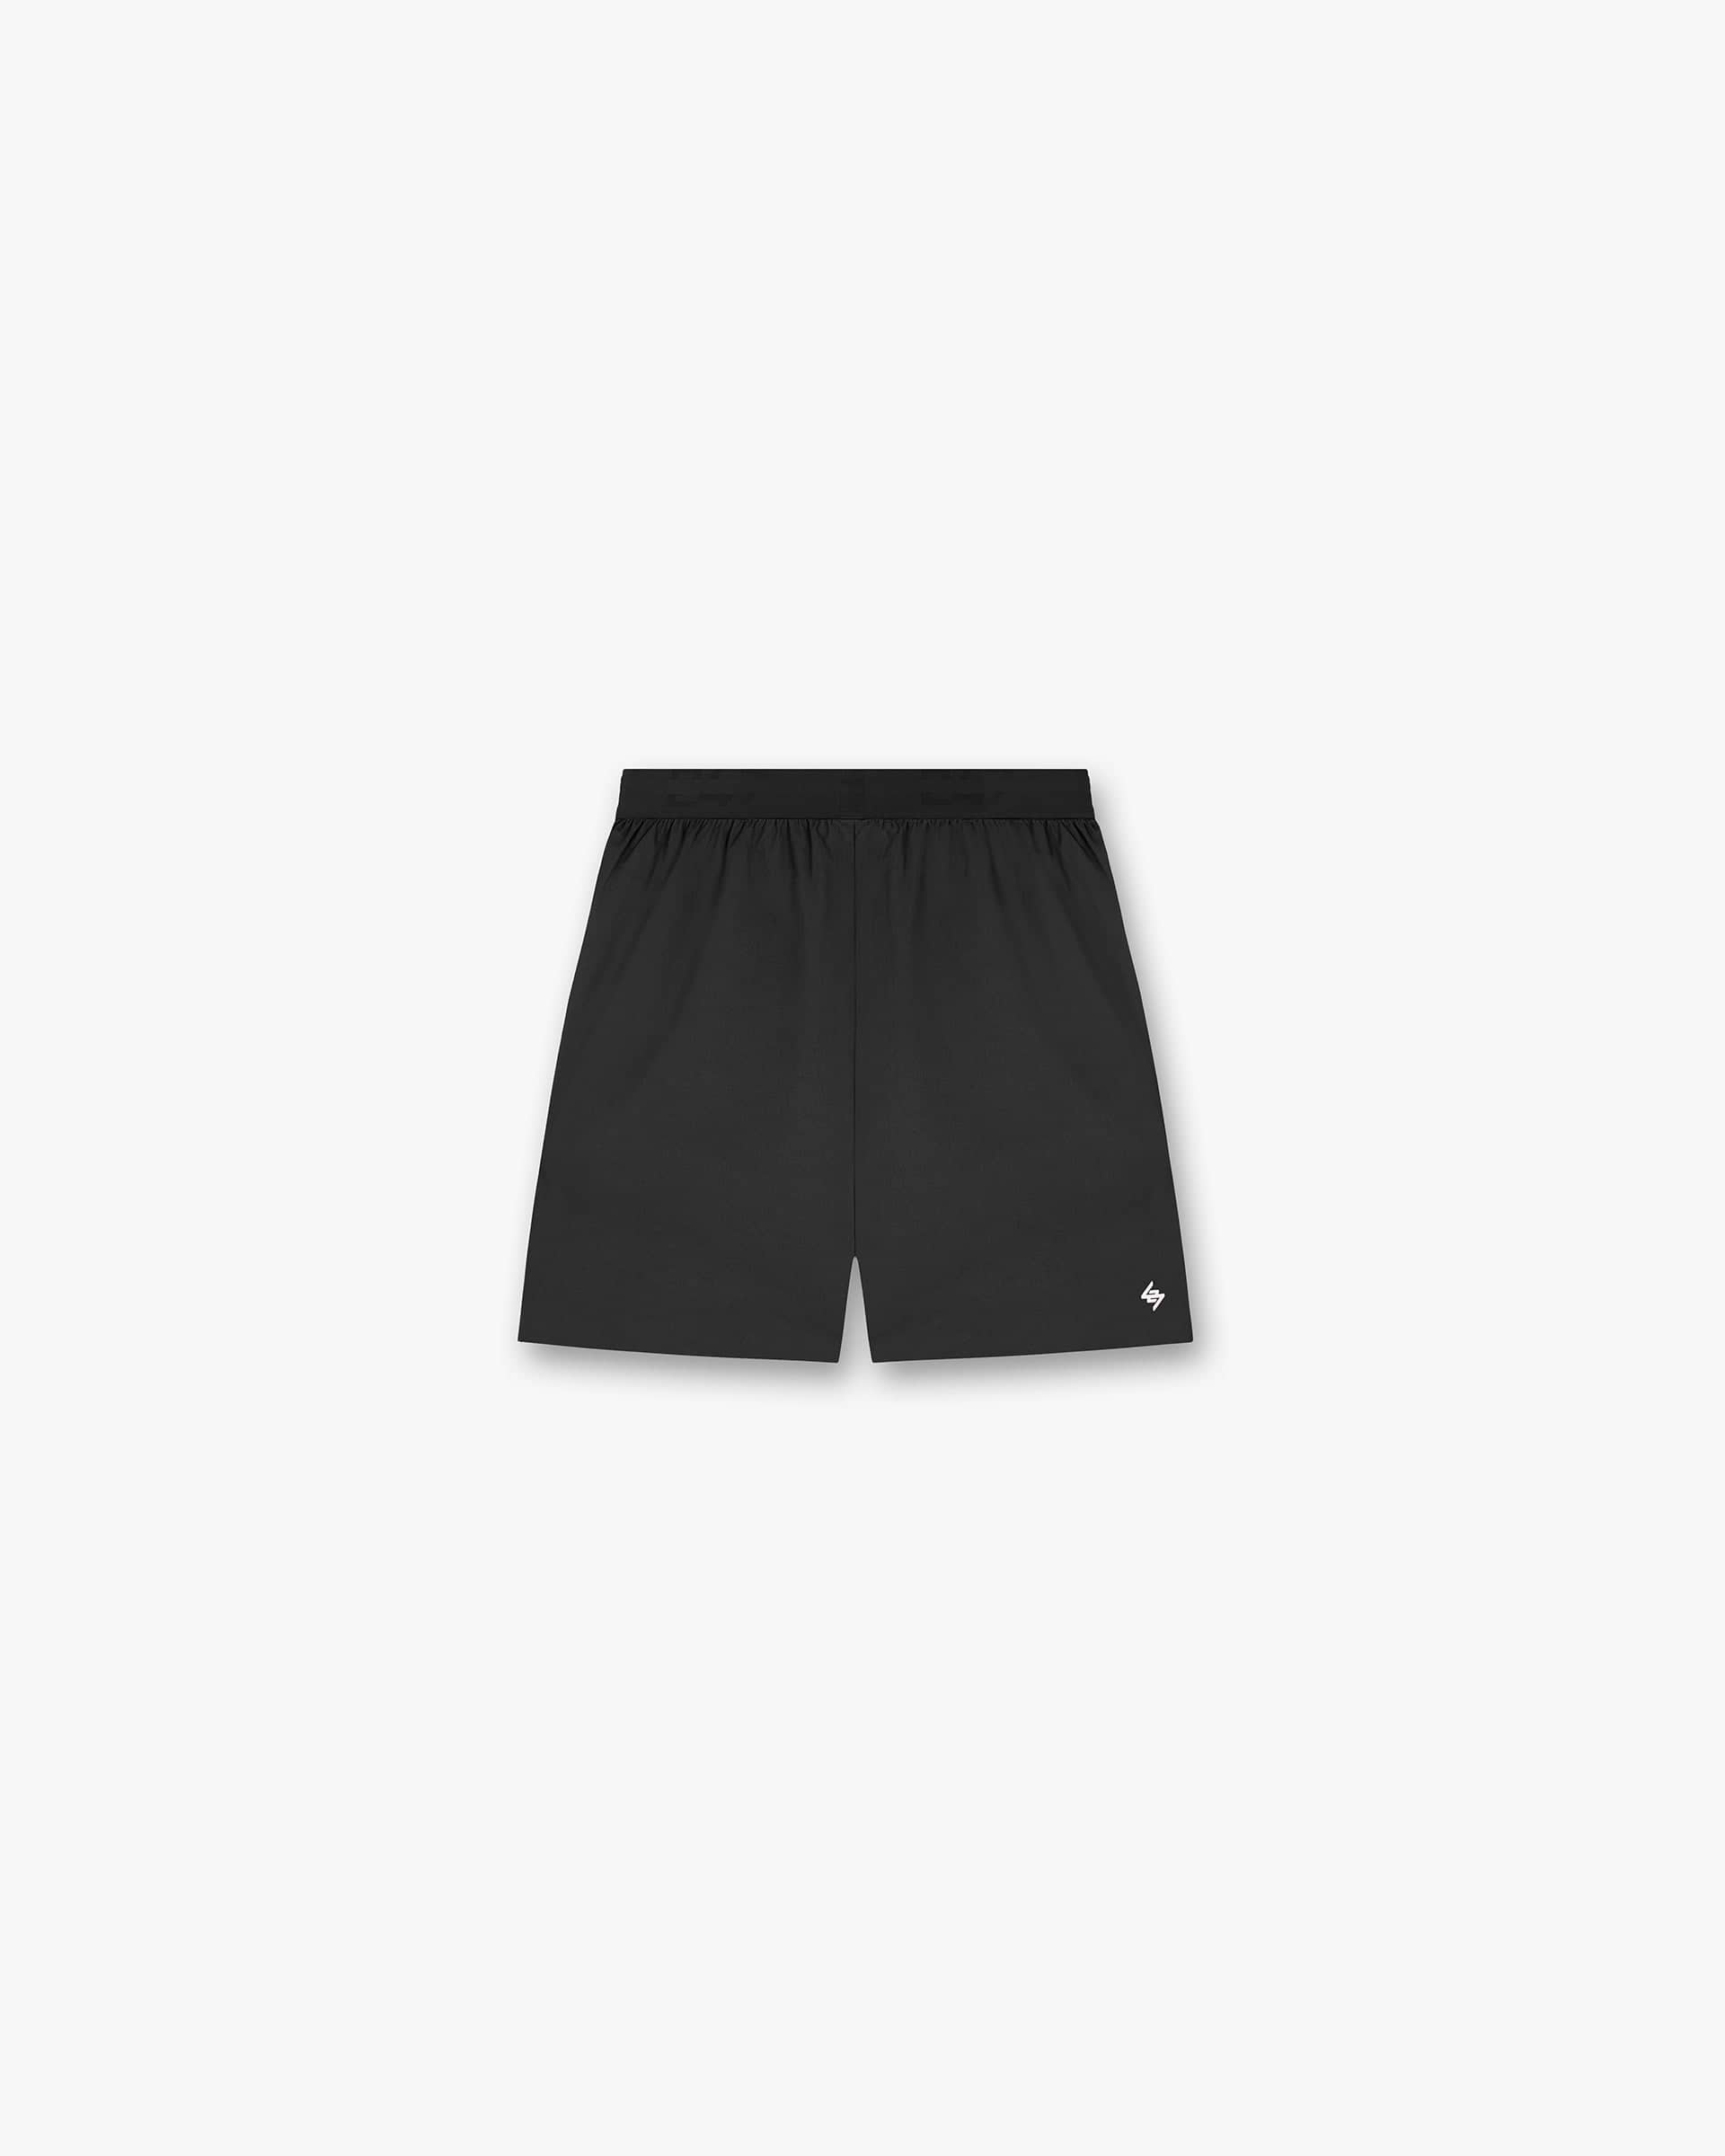 247 Fused Shorts - Black